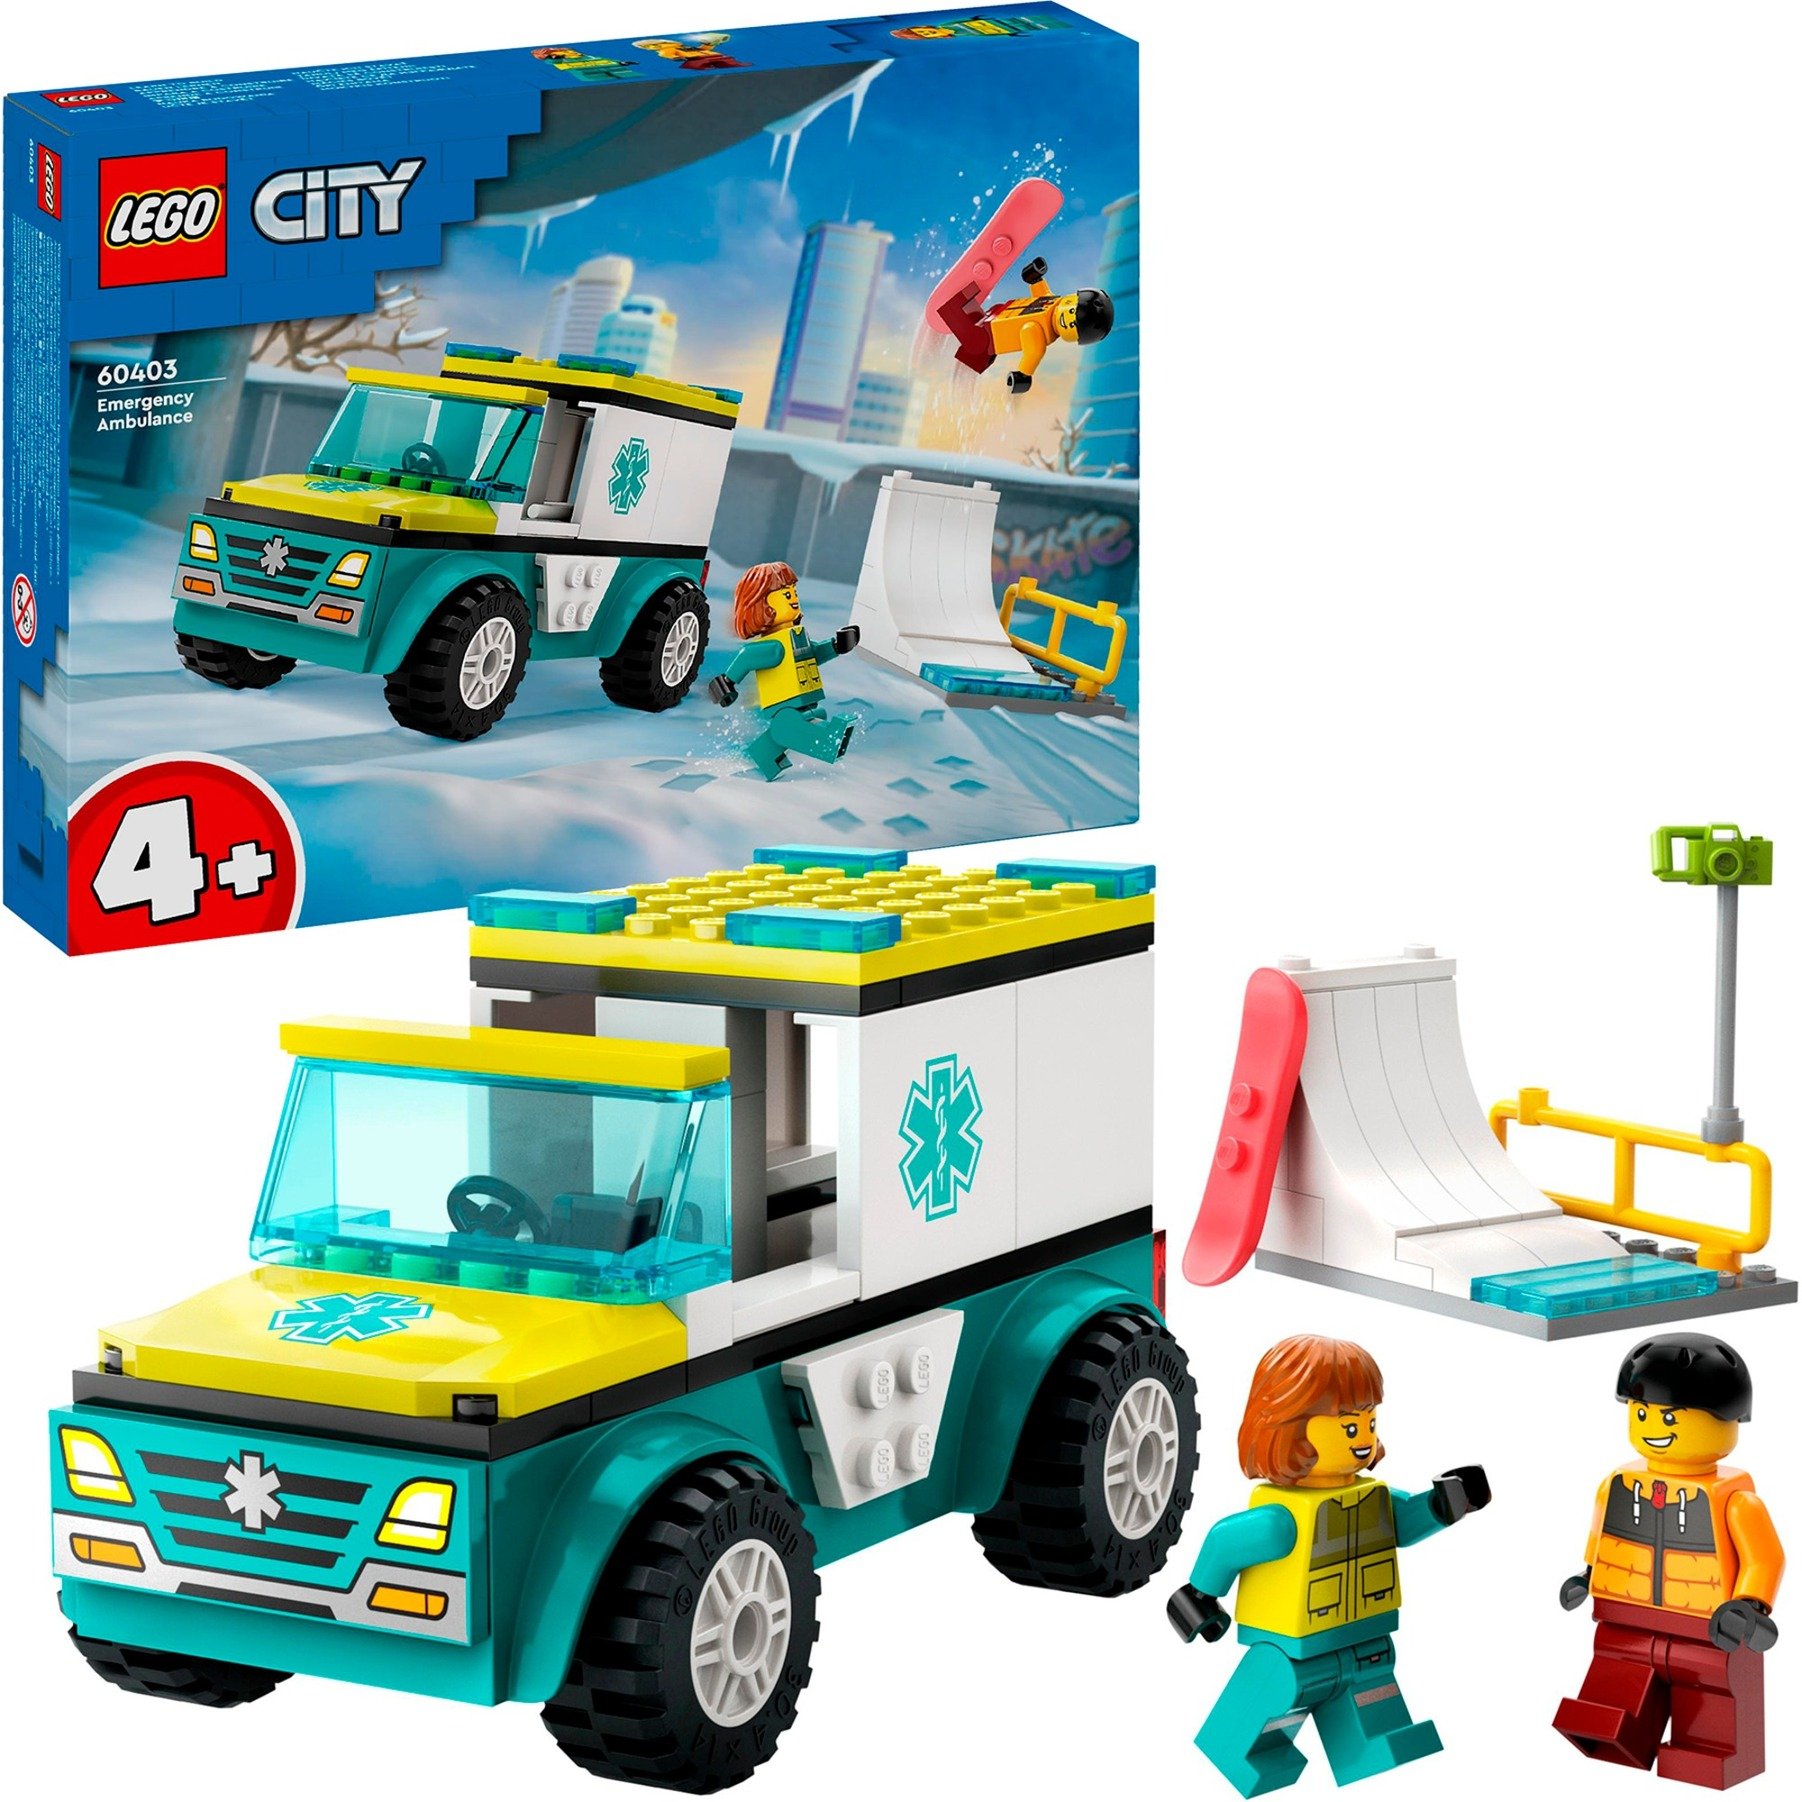 60403 City Rettungswagen und Snowboarder, Konstruktionsspielzeug von Lego